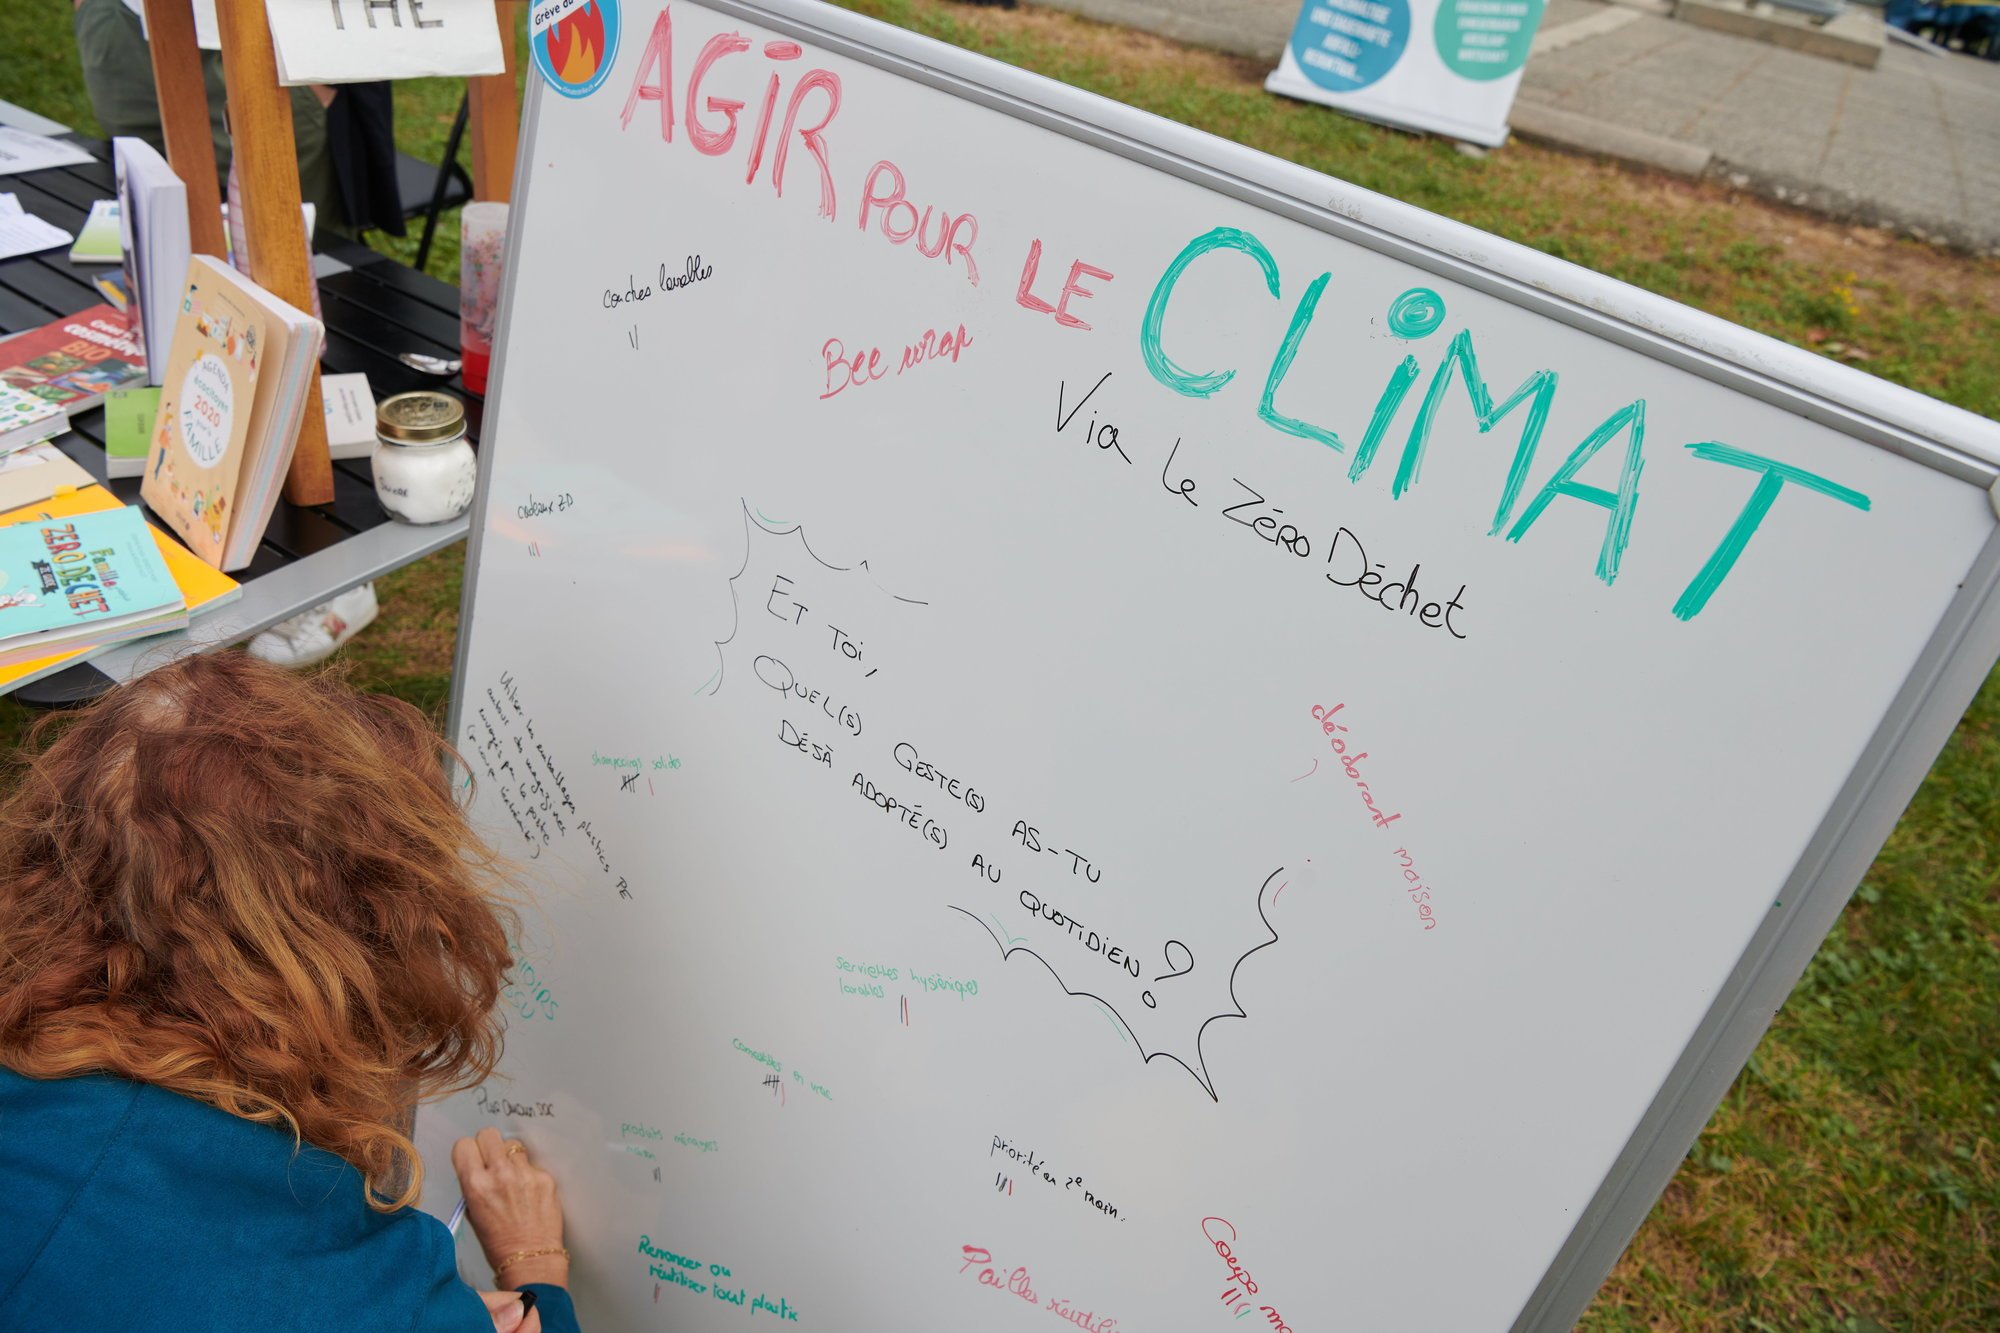 Une journée est organisée à La Chaux-de-Fonds ce samedi pour discuter des enjeux climatiques (ici, la Grève pour le climat en septembre 2019).